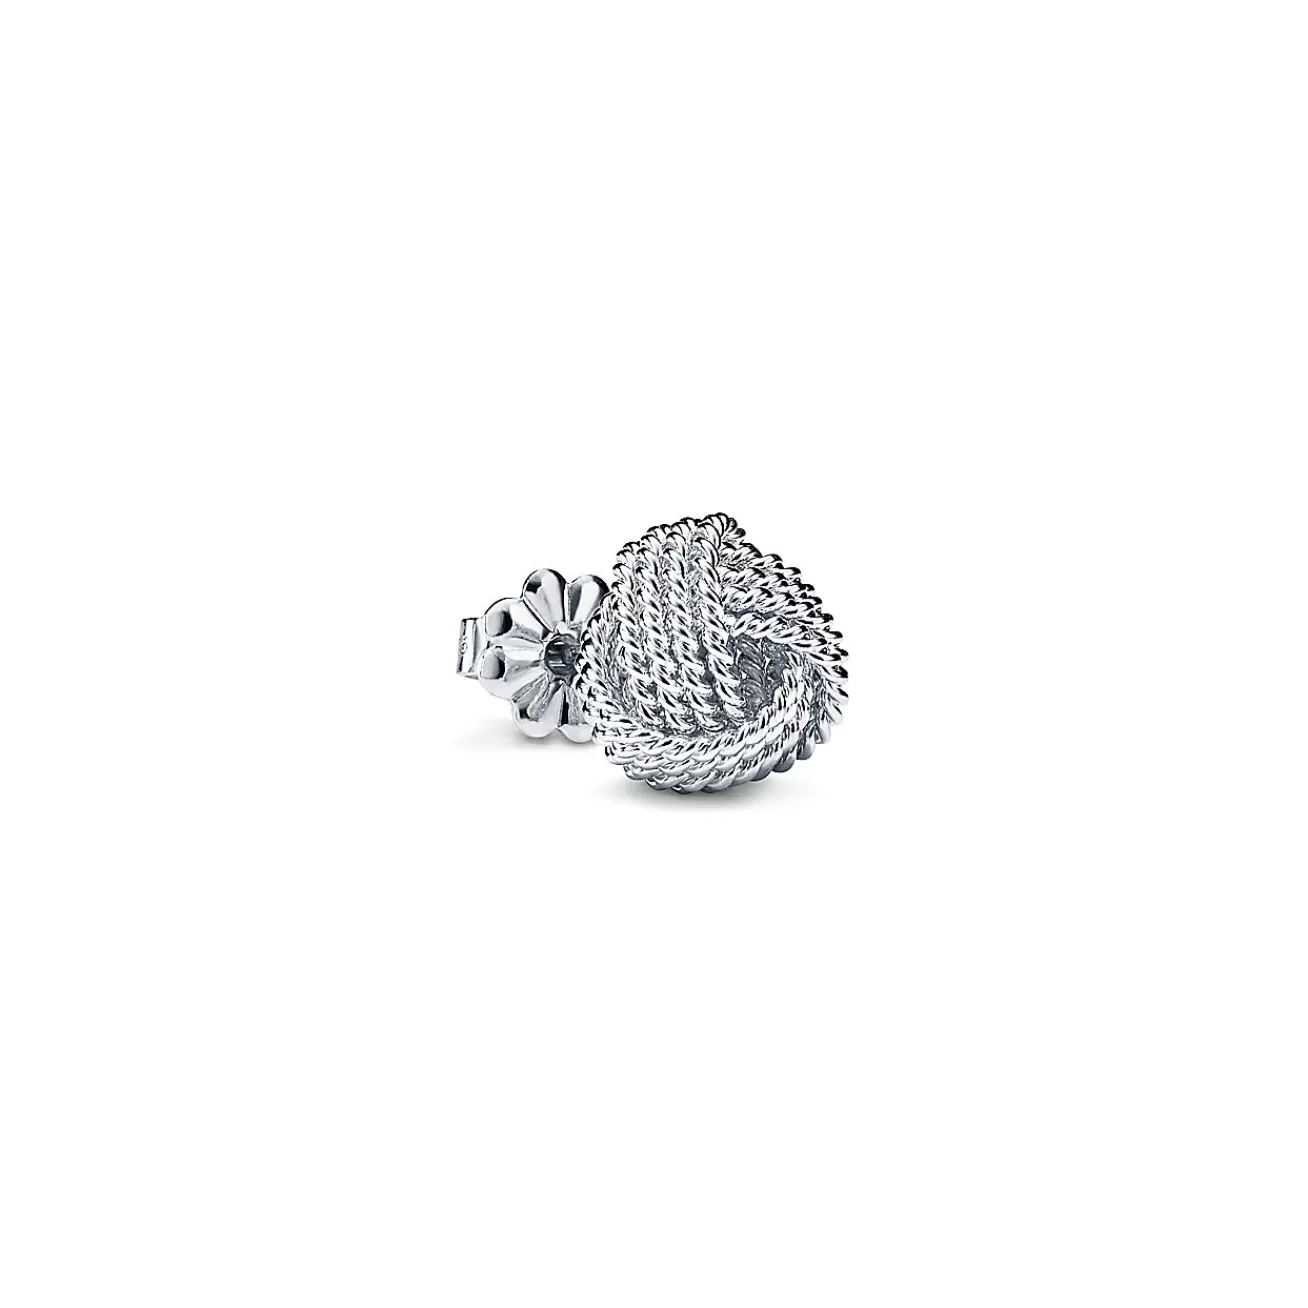 Tiffany & Co. Tiffany Twist knot earrings in sterling silver. | ^ Earrings | Gifts for Her